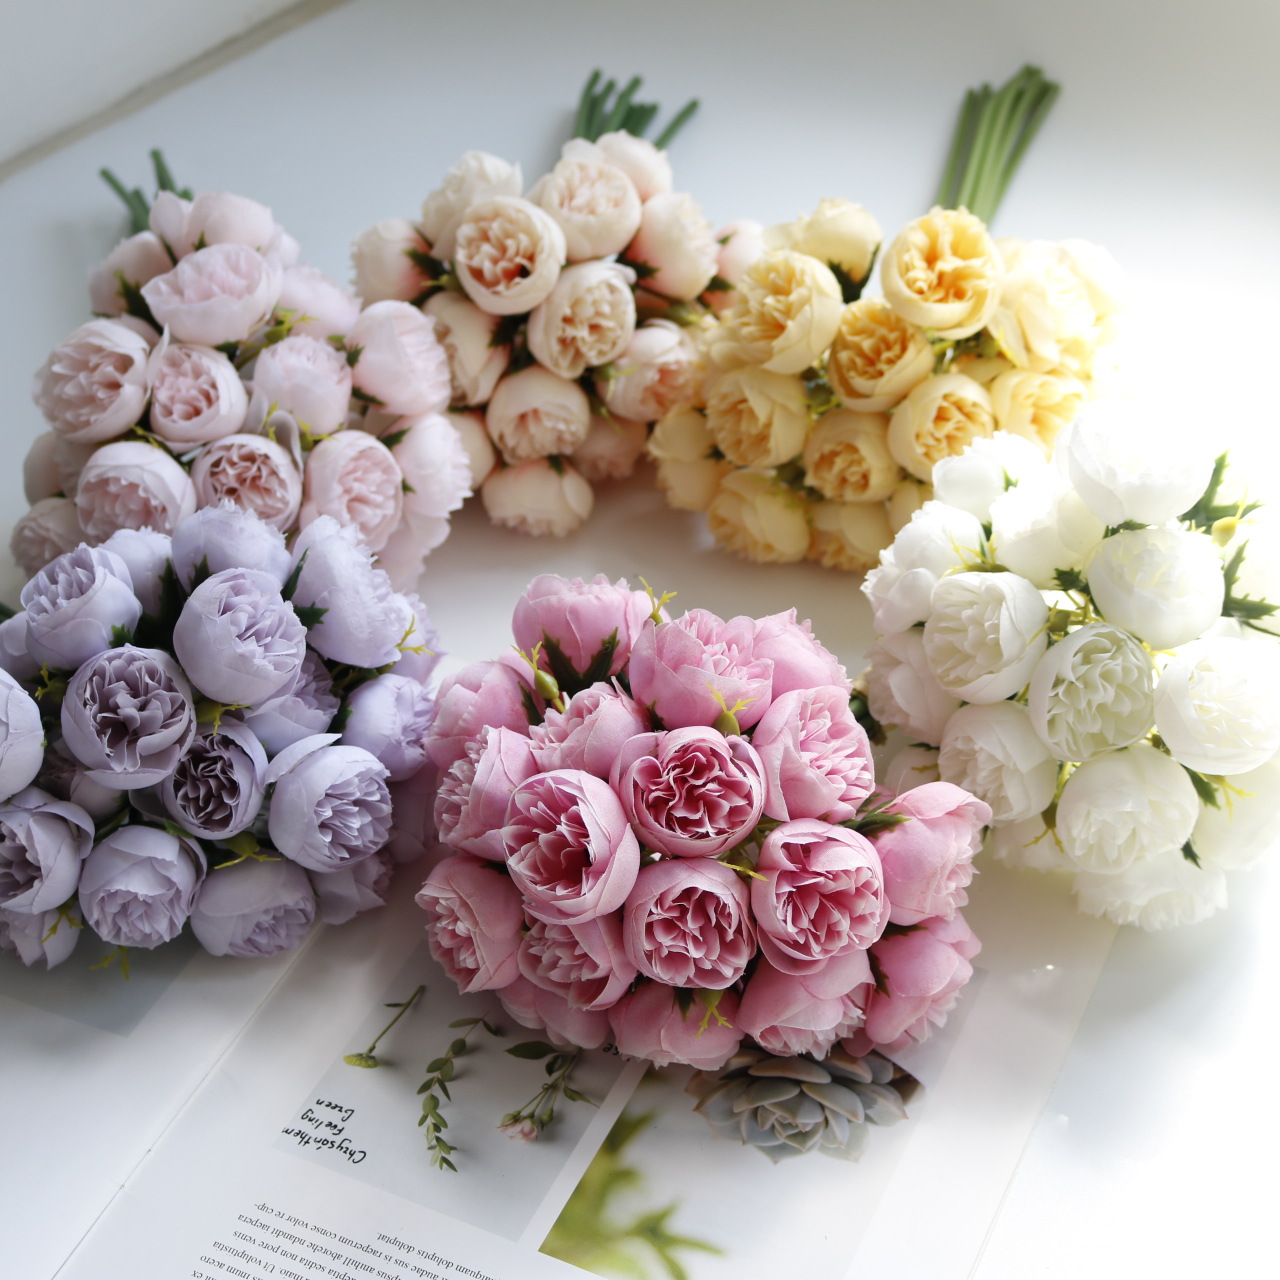 Comprar Ramo de ramas largas de rosas de seda artificiales, 5 uds., para  decoración del hogar, boda, flores falsas, suministros de corona DIY,  accesorios